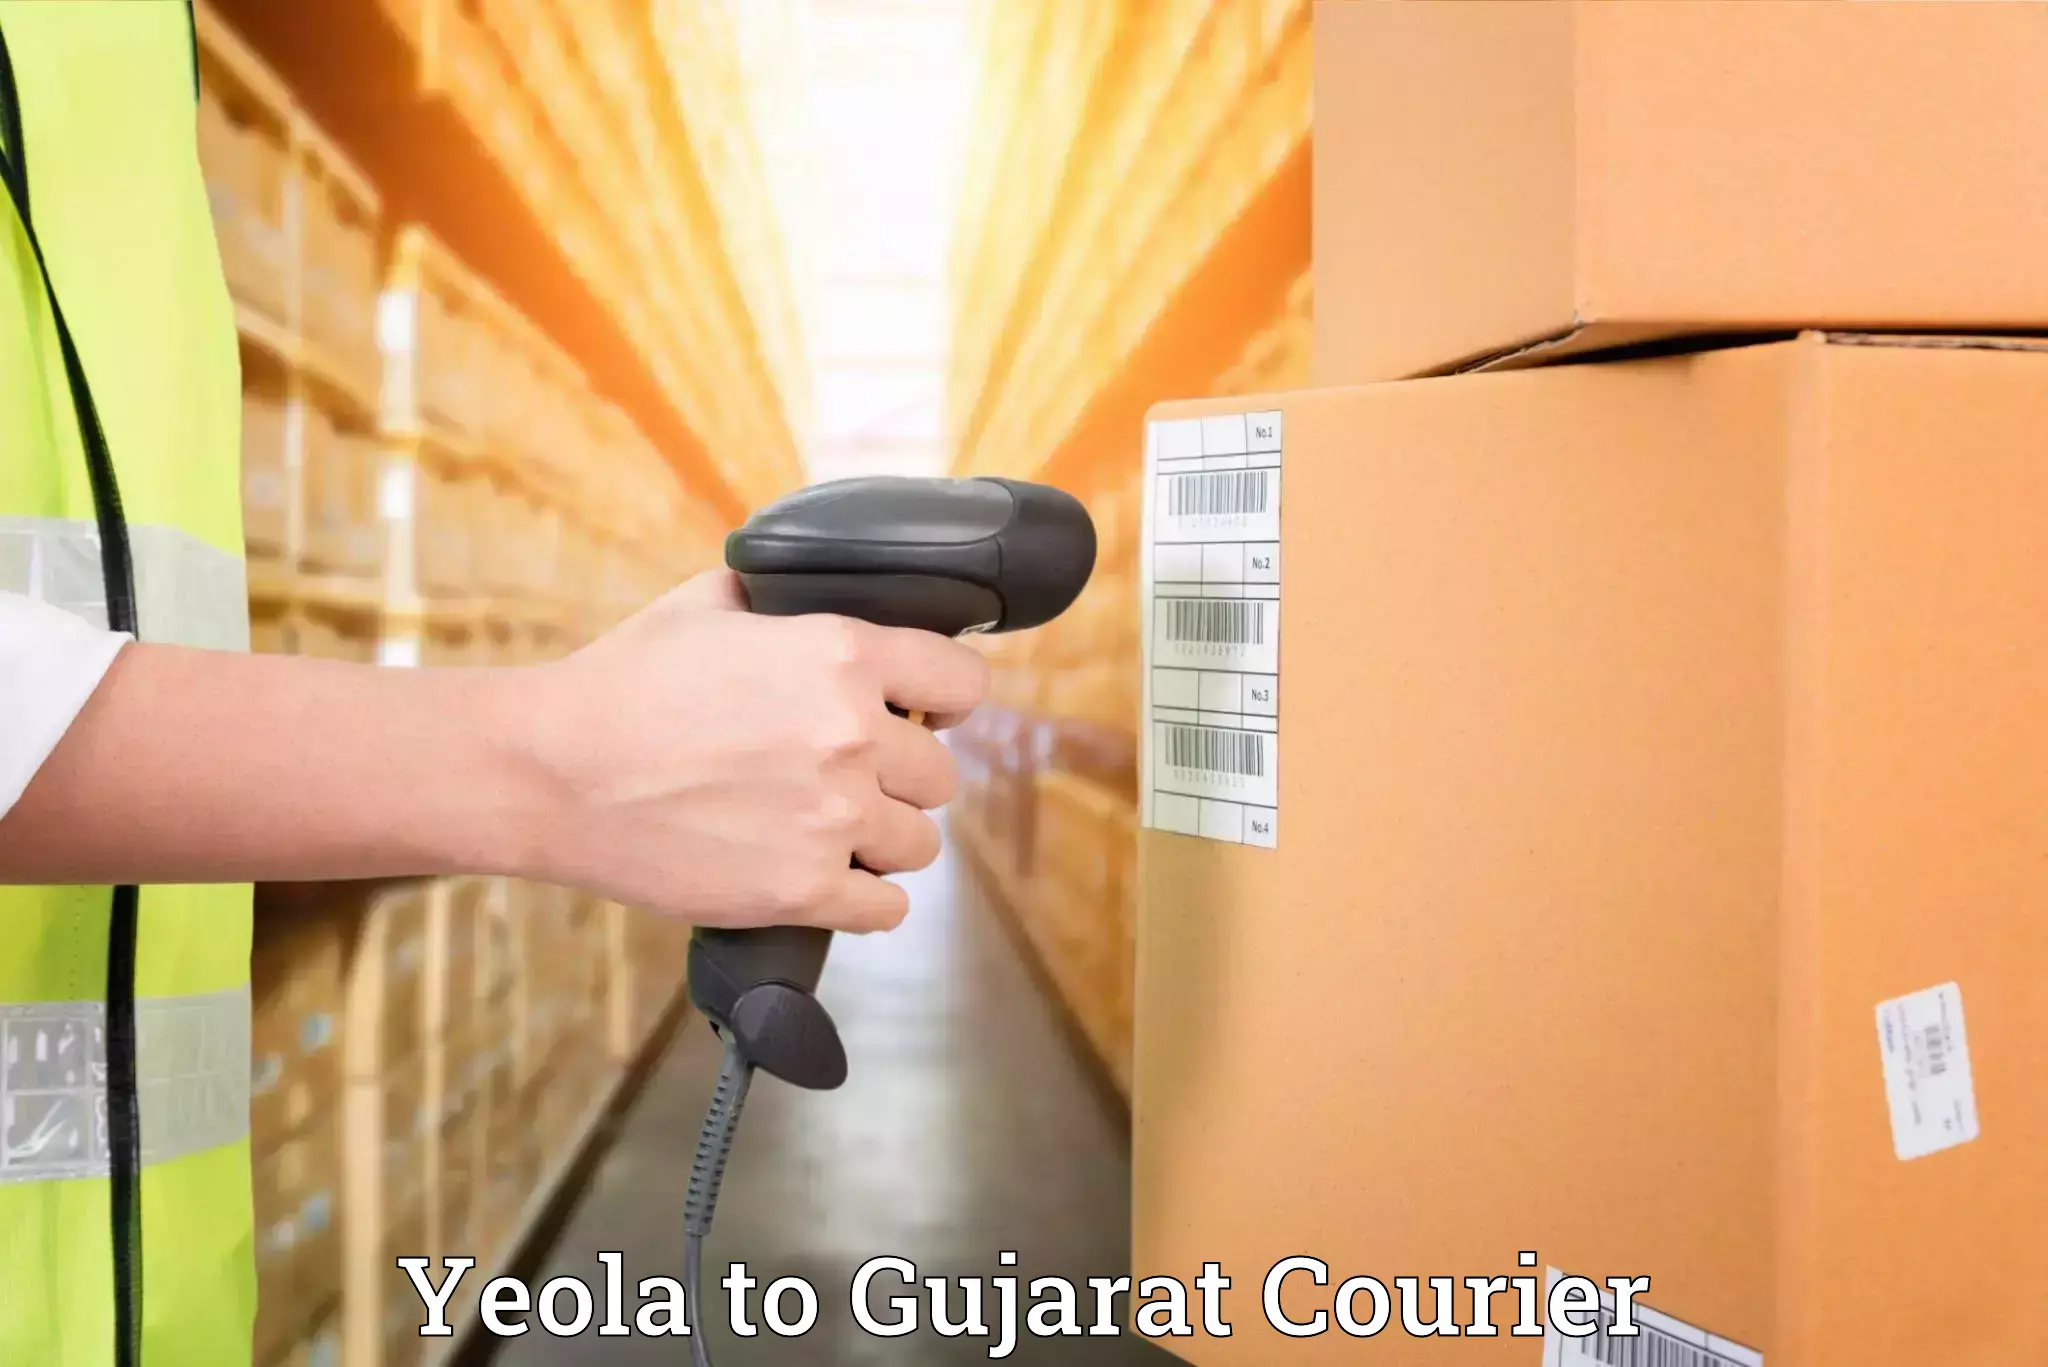 Professional moving company Yeola to Umreth